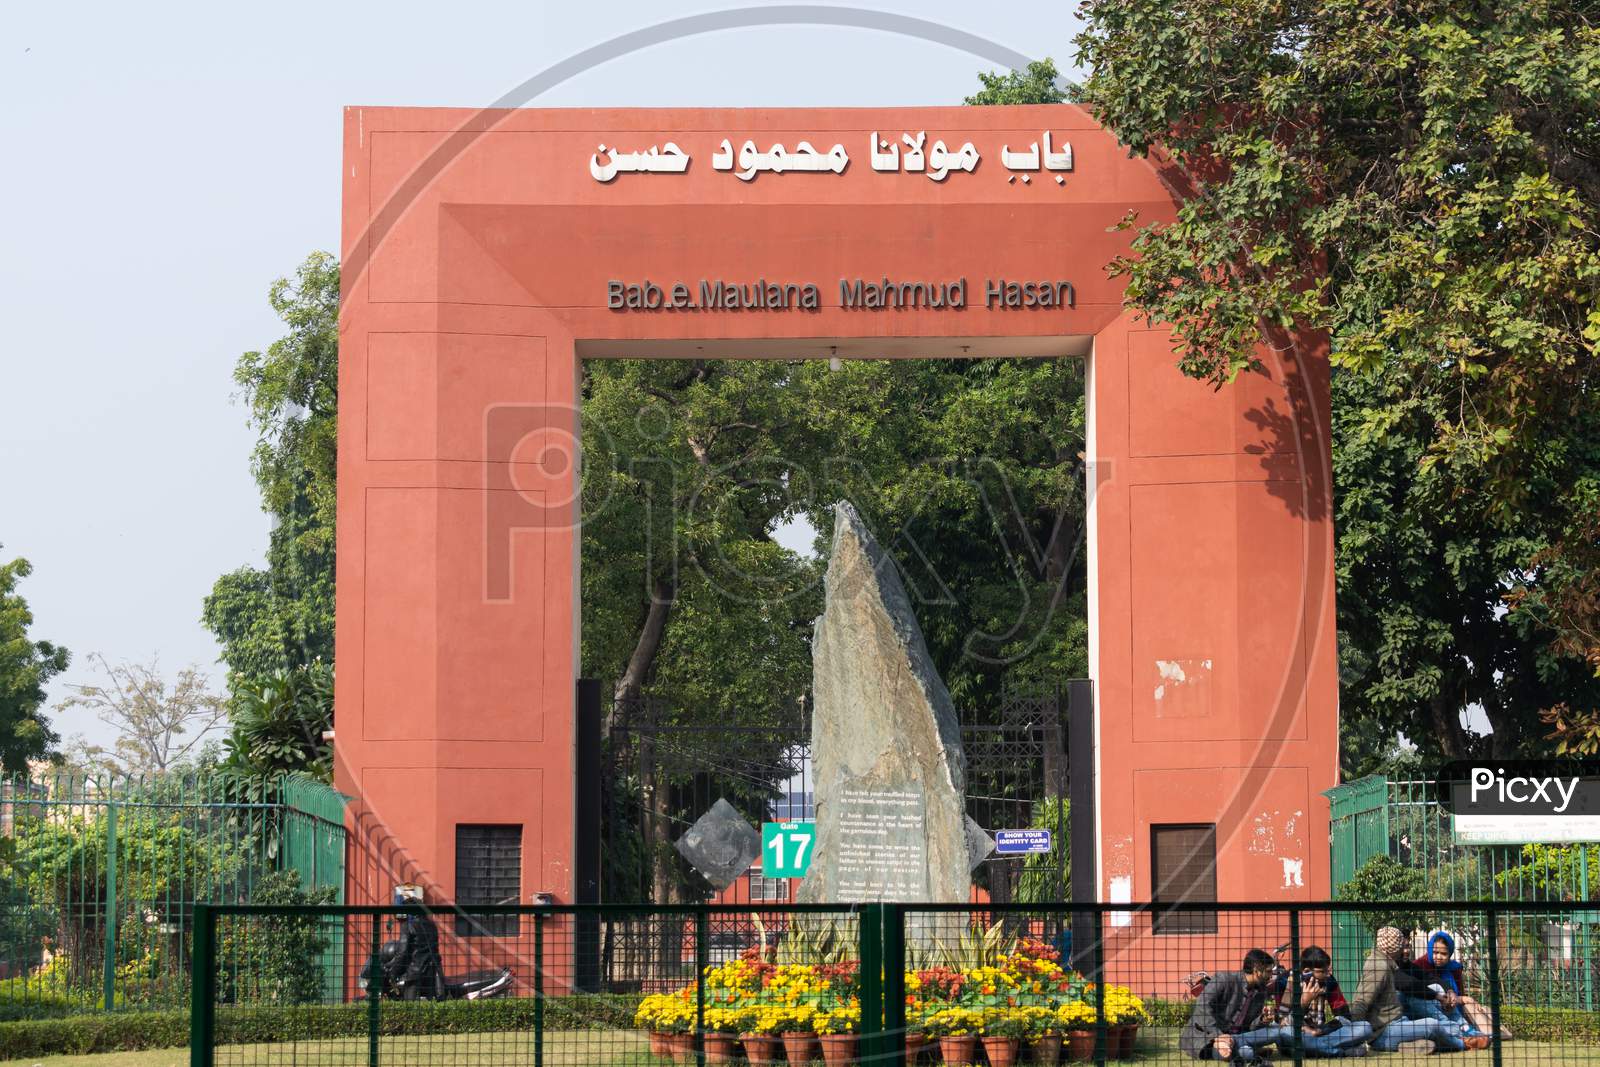 Bab.e.Maulana Mahmud Hasan Jamia Millia Islamia Gate No. 17